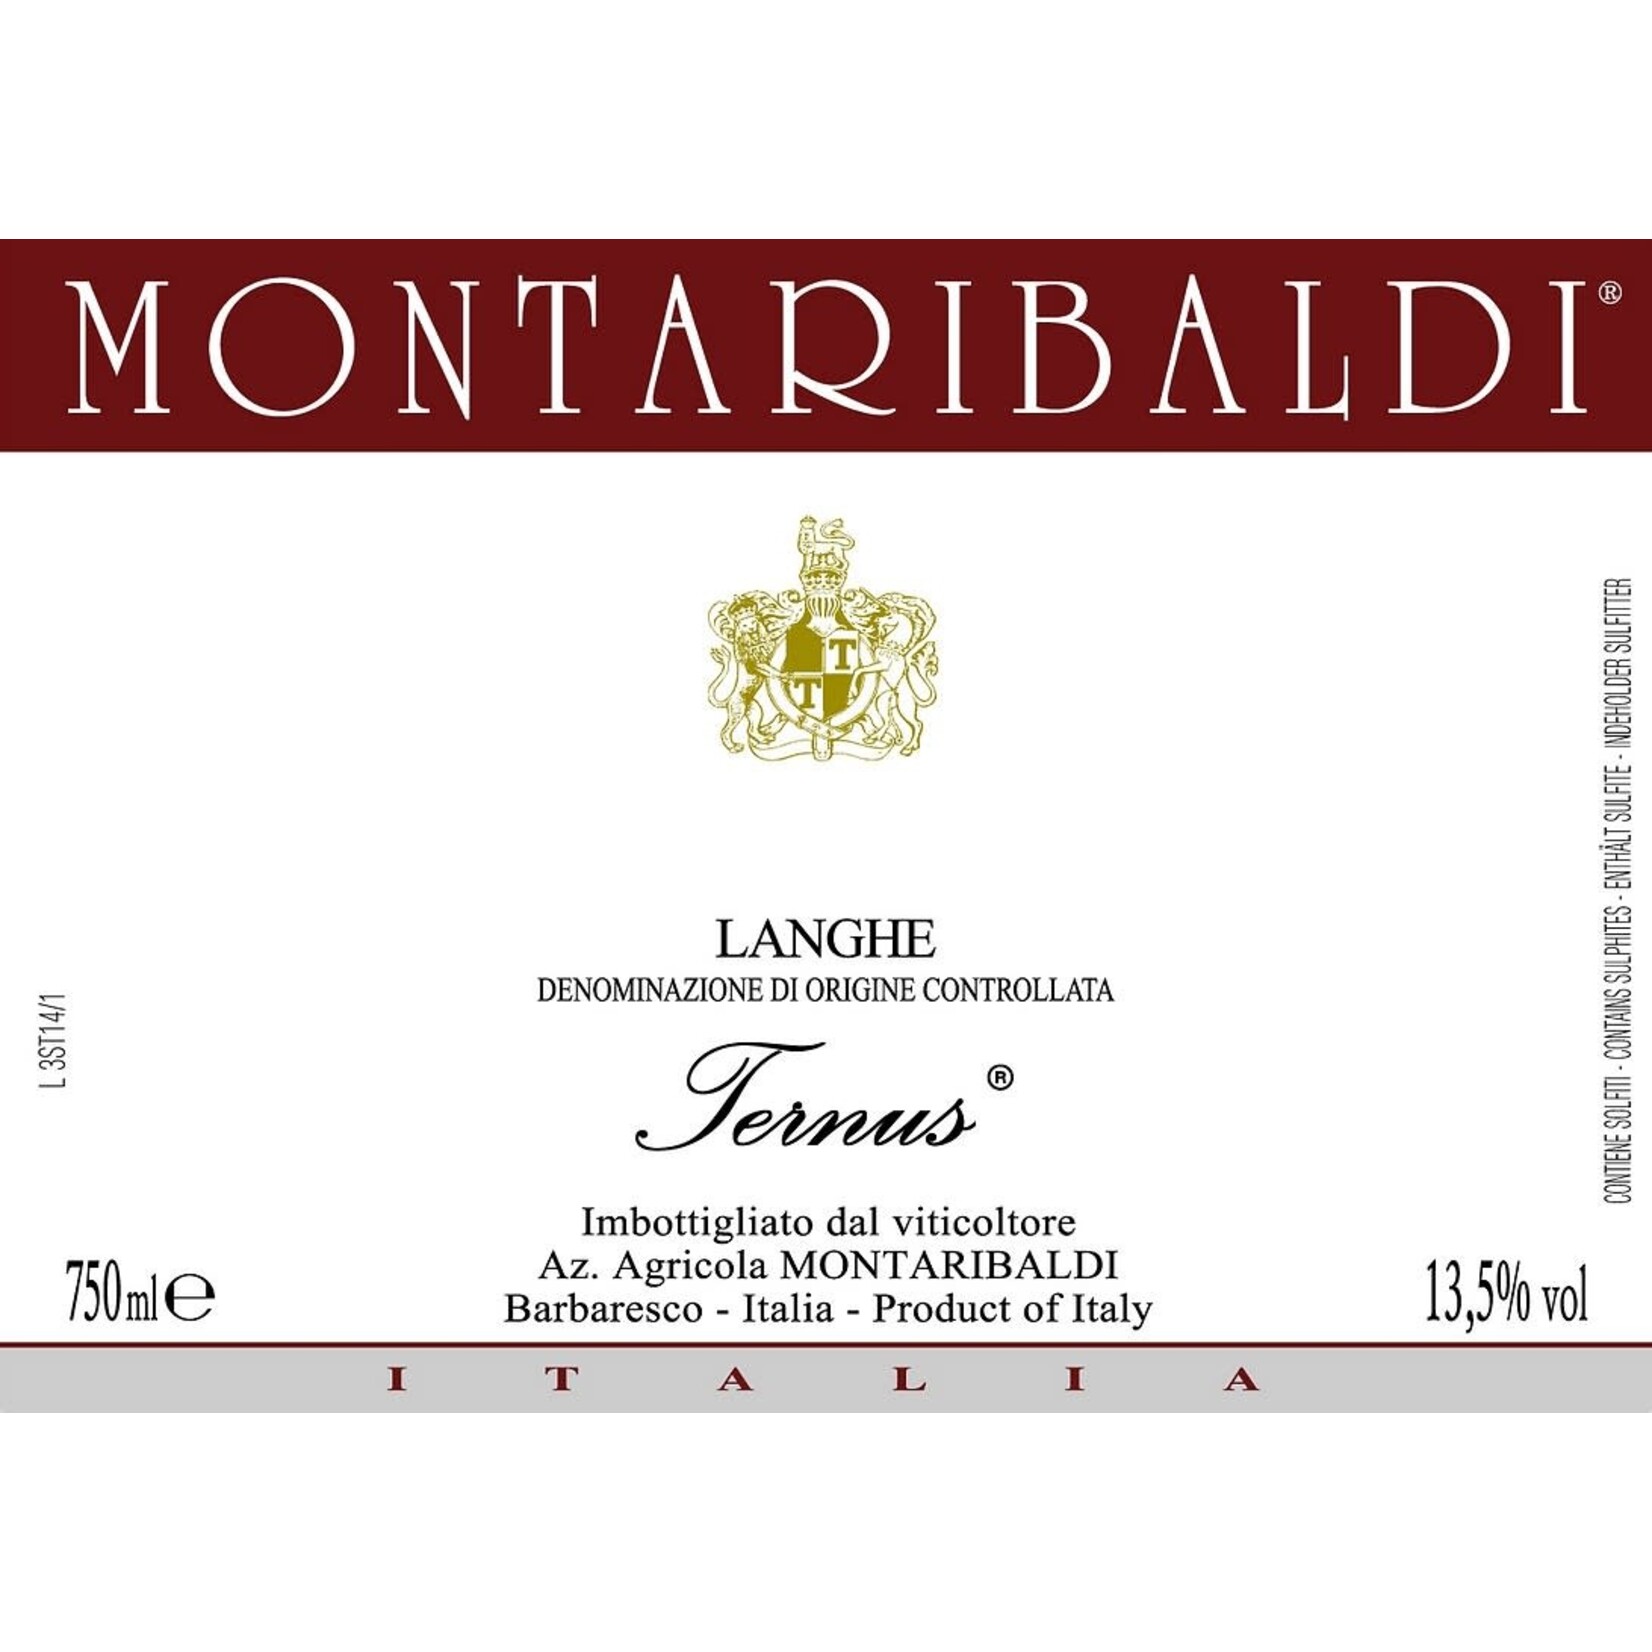 Montaribaldi Montaribaldi Langhe Ternus Barberesco 2021  Piedmont, Italy